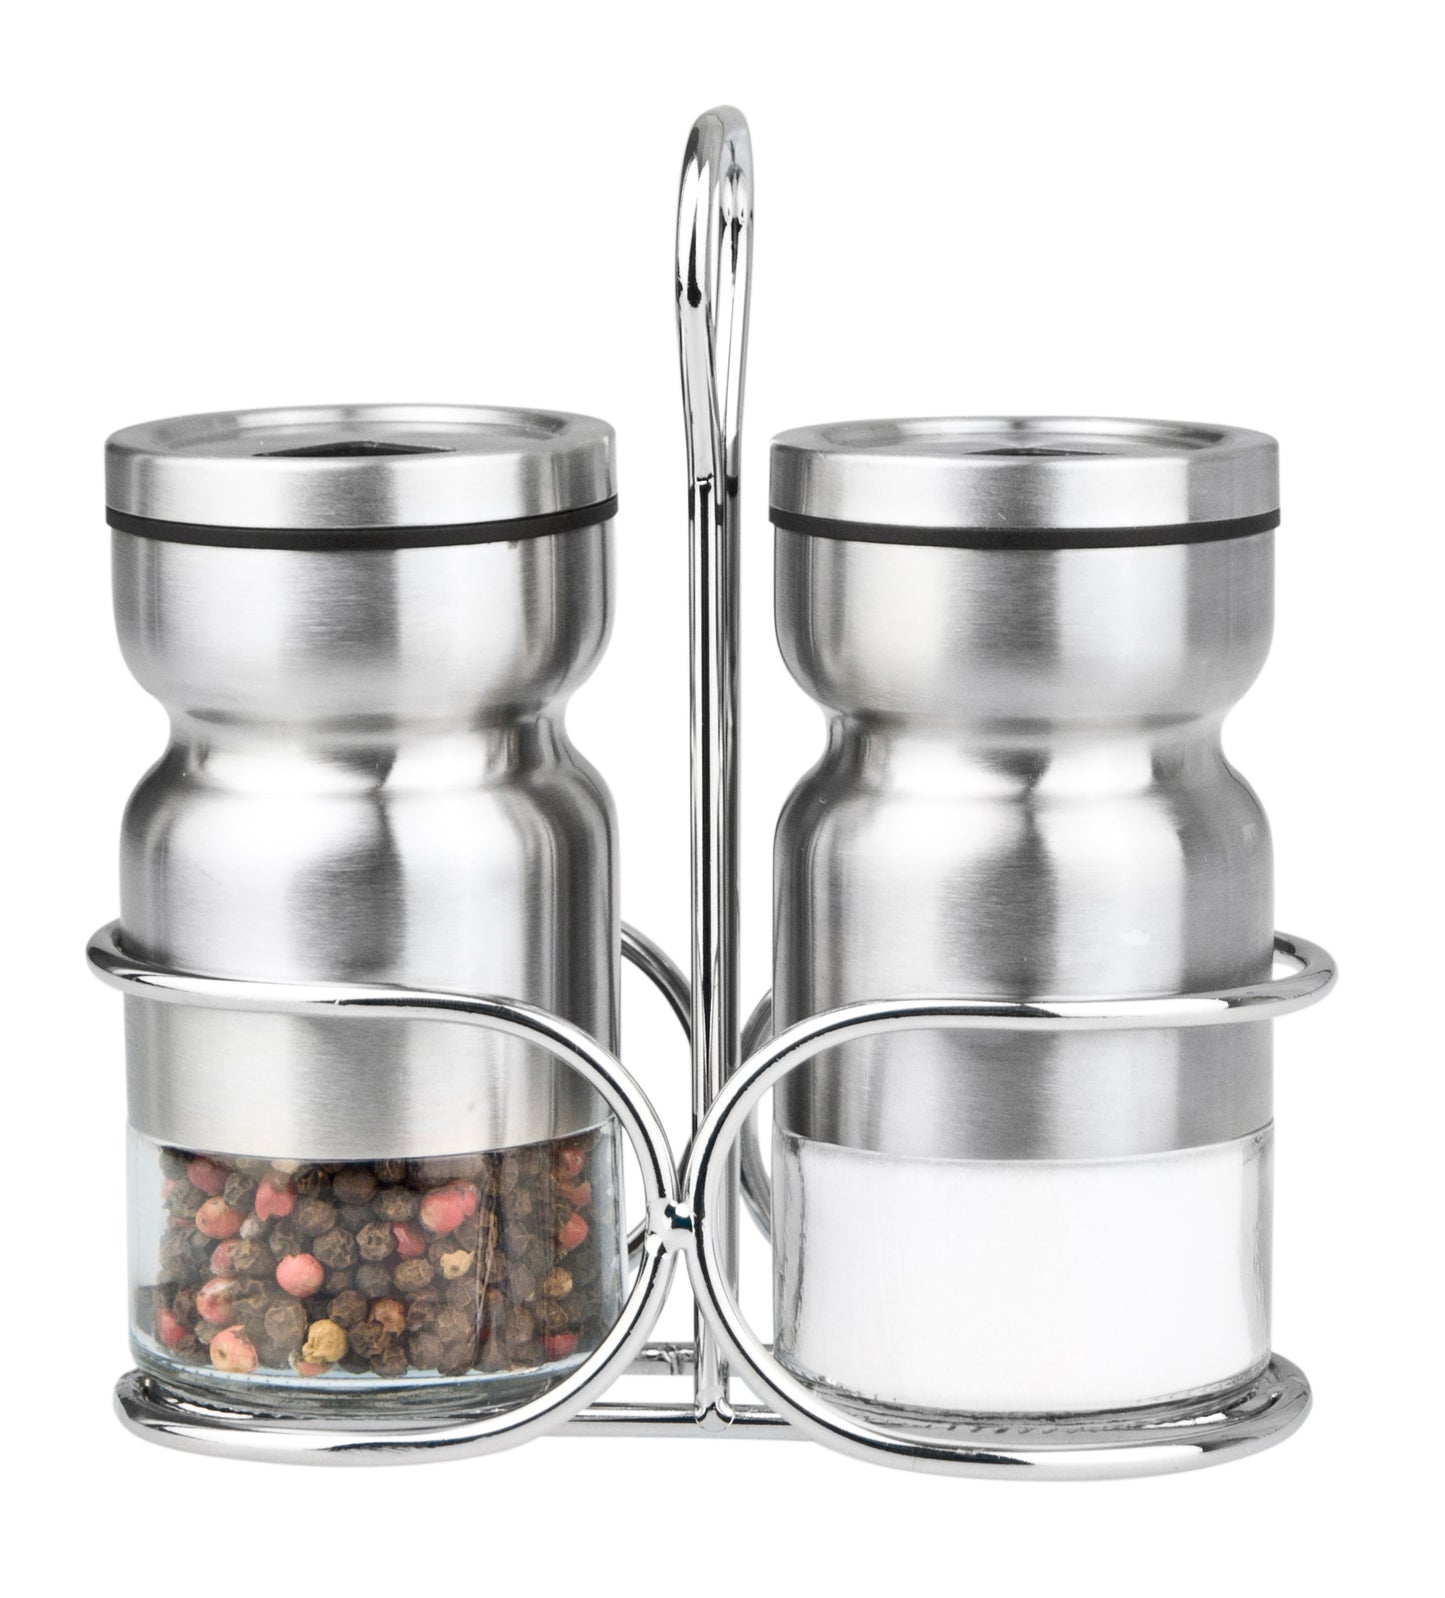 Cuisinox Salt & Pepper Shaker Set With Caddy